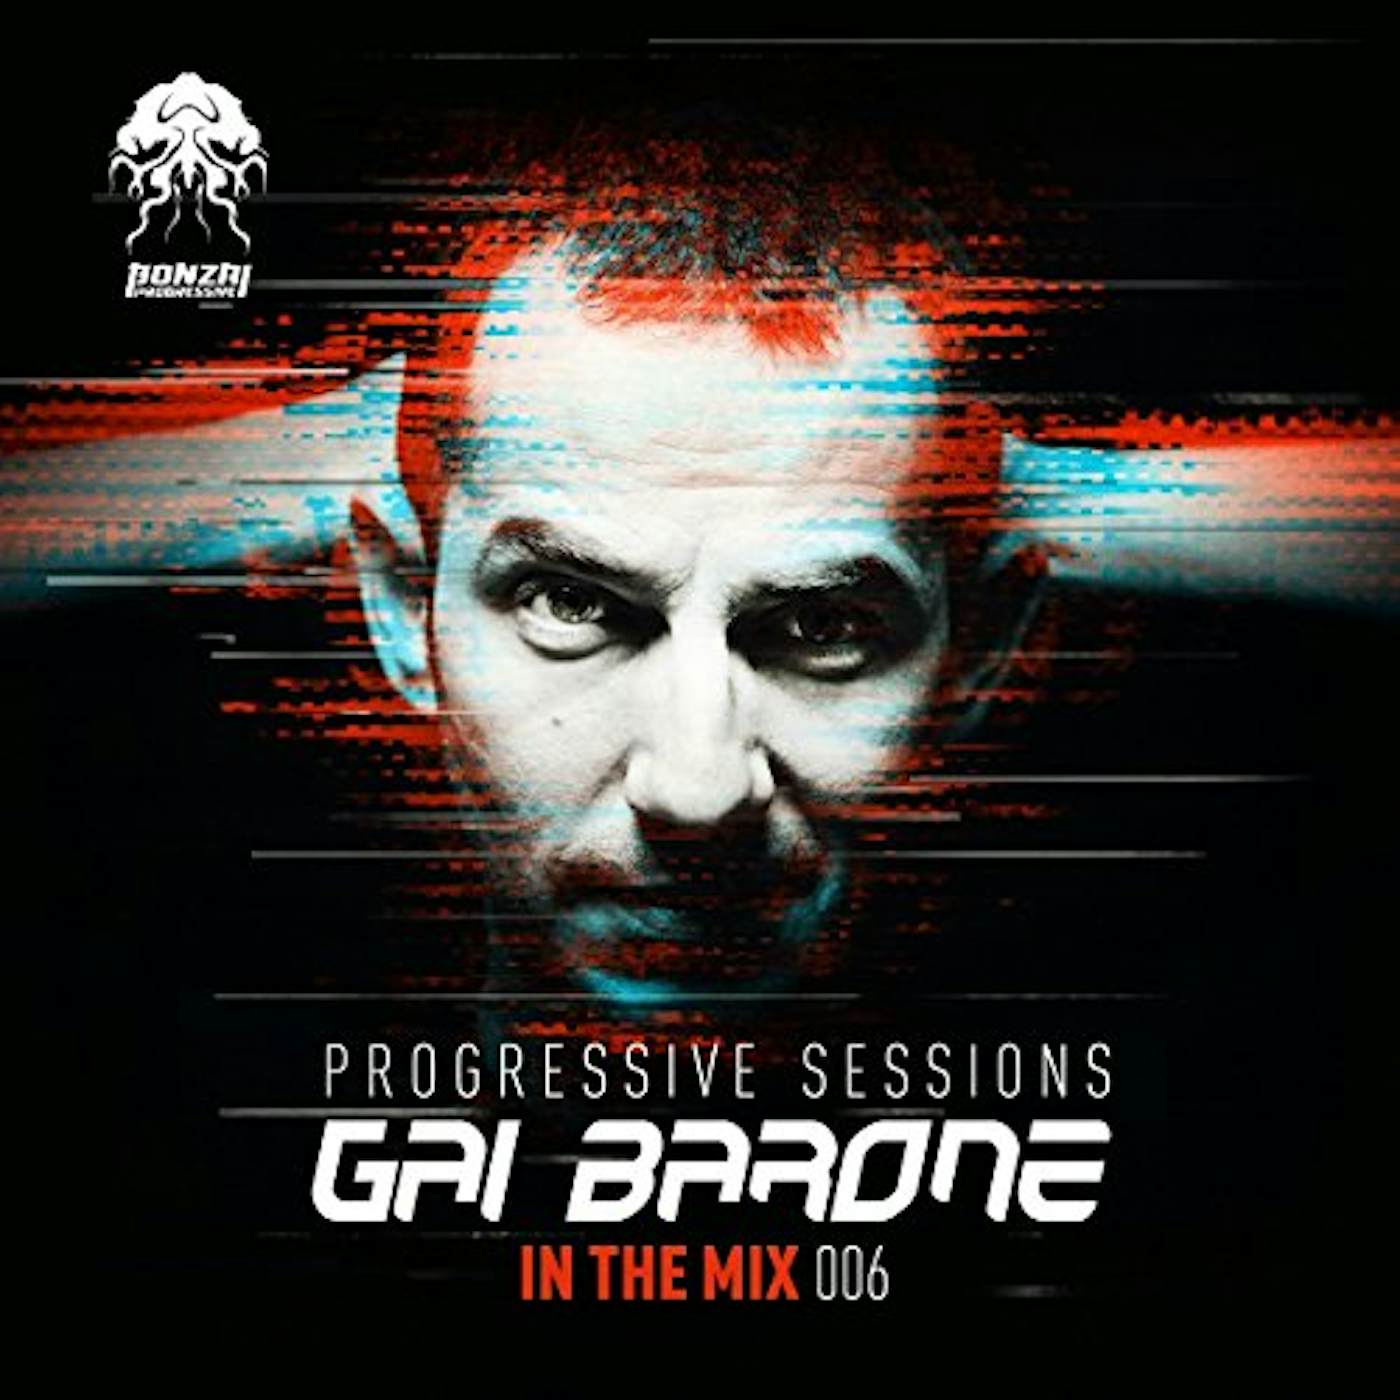 Gai Barone IN THE MIX 006: PROGRESSIVE SESSIONS CD